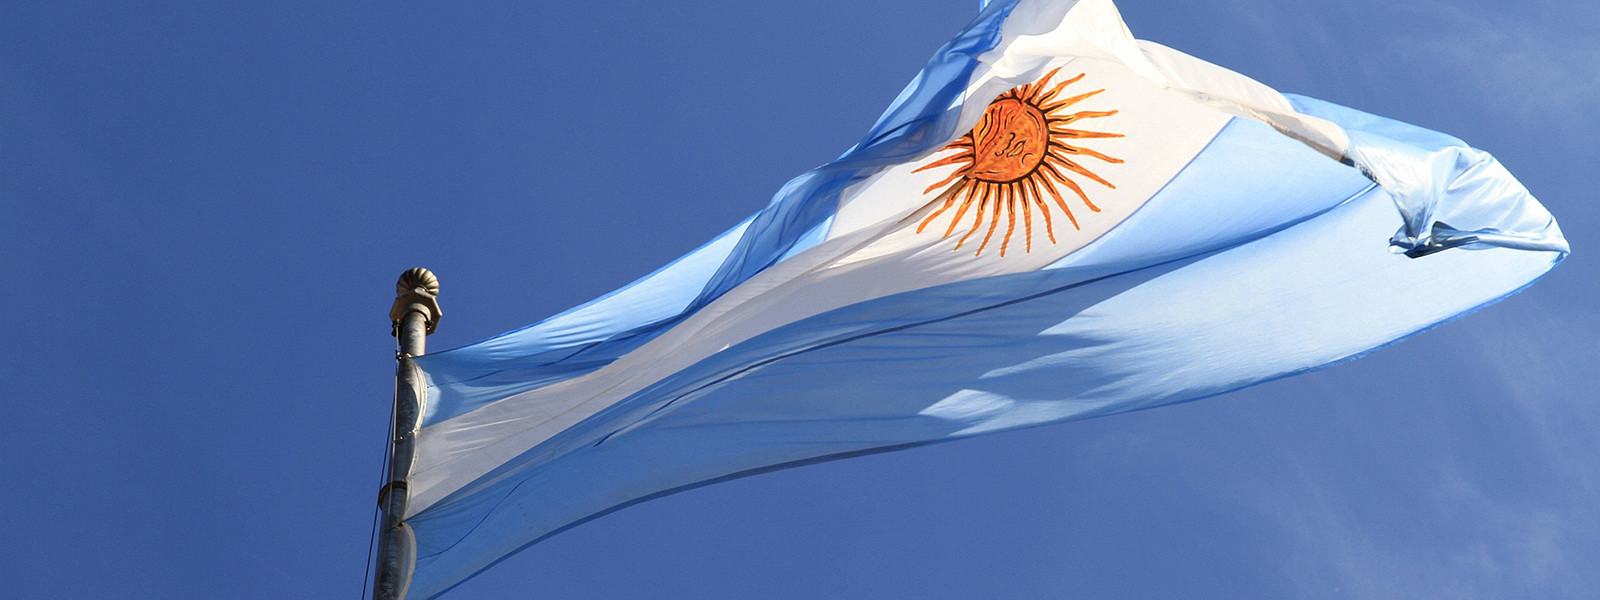 Журнал/Почему жить в Аргентине на самом деле не очень: 7 аргументов